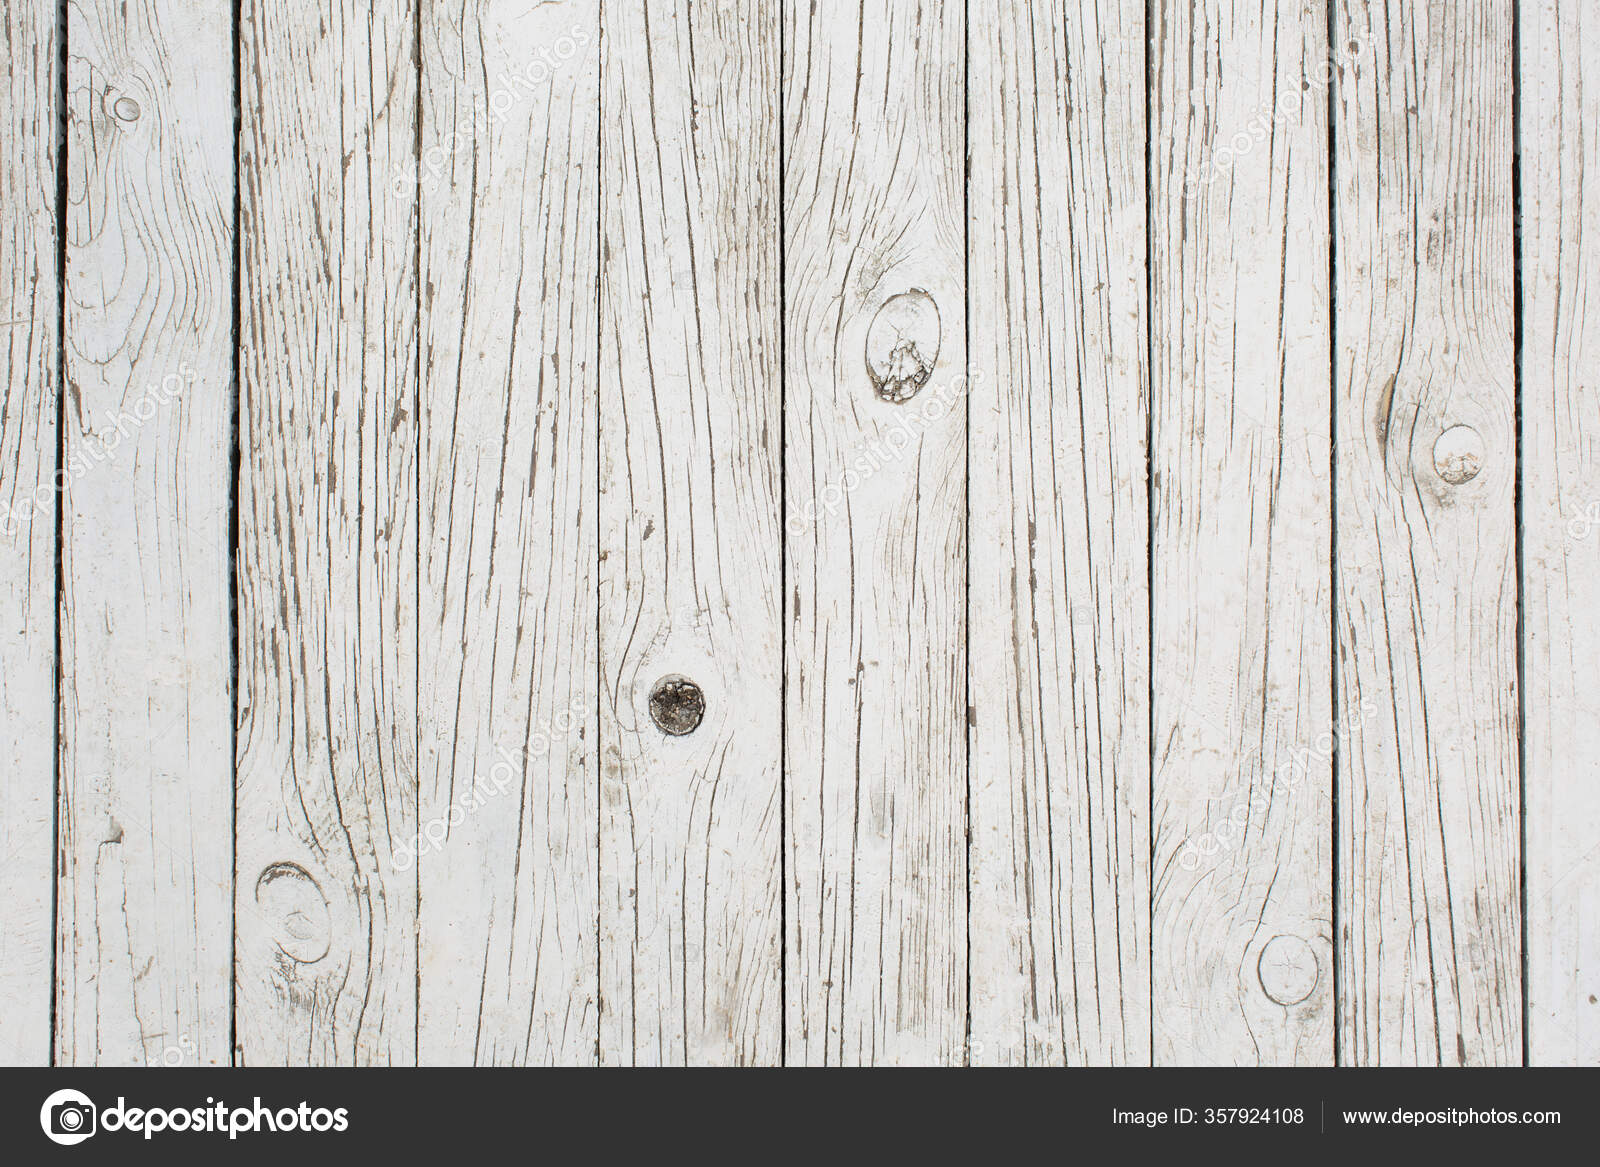 Hãy khám phá thế giới đẹp tuyệt vời của nền gỗ trắng độ phân giải cao. Những hình ảnh này sẽ khiến bạn ngỡ ngàng với độ sắc nét và chi tiết chân thật, từng sợi gỗ nhỏ nhất cũng được tái hiện rõ nét. Hãy thuần hóa mắt với những màu sắc tuyệt đẹp của nền gỗ trắng độc đáo này.